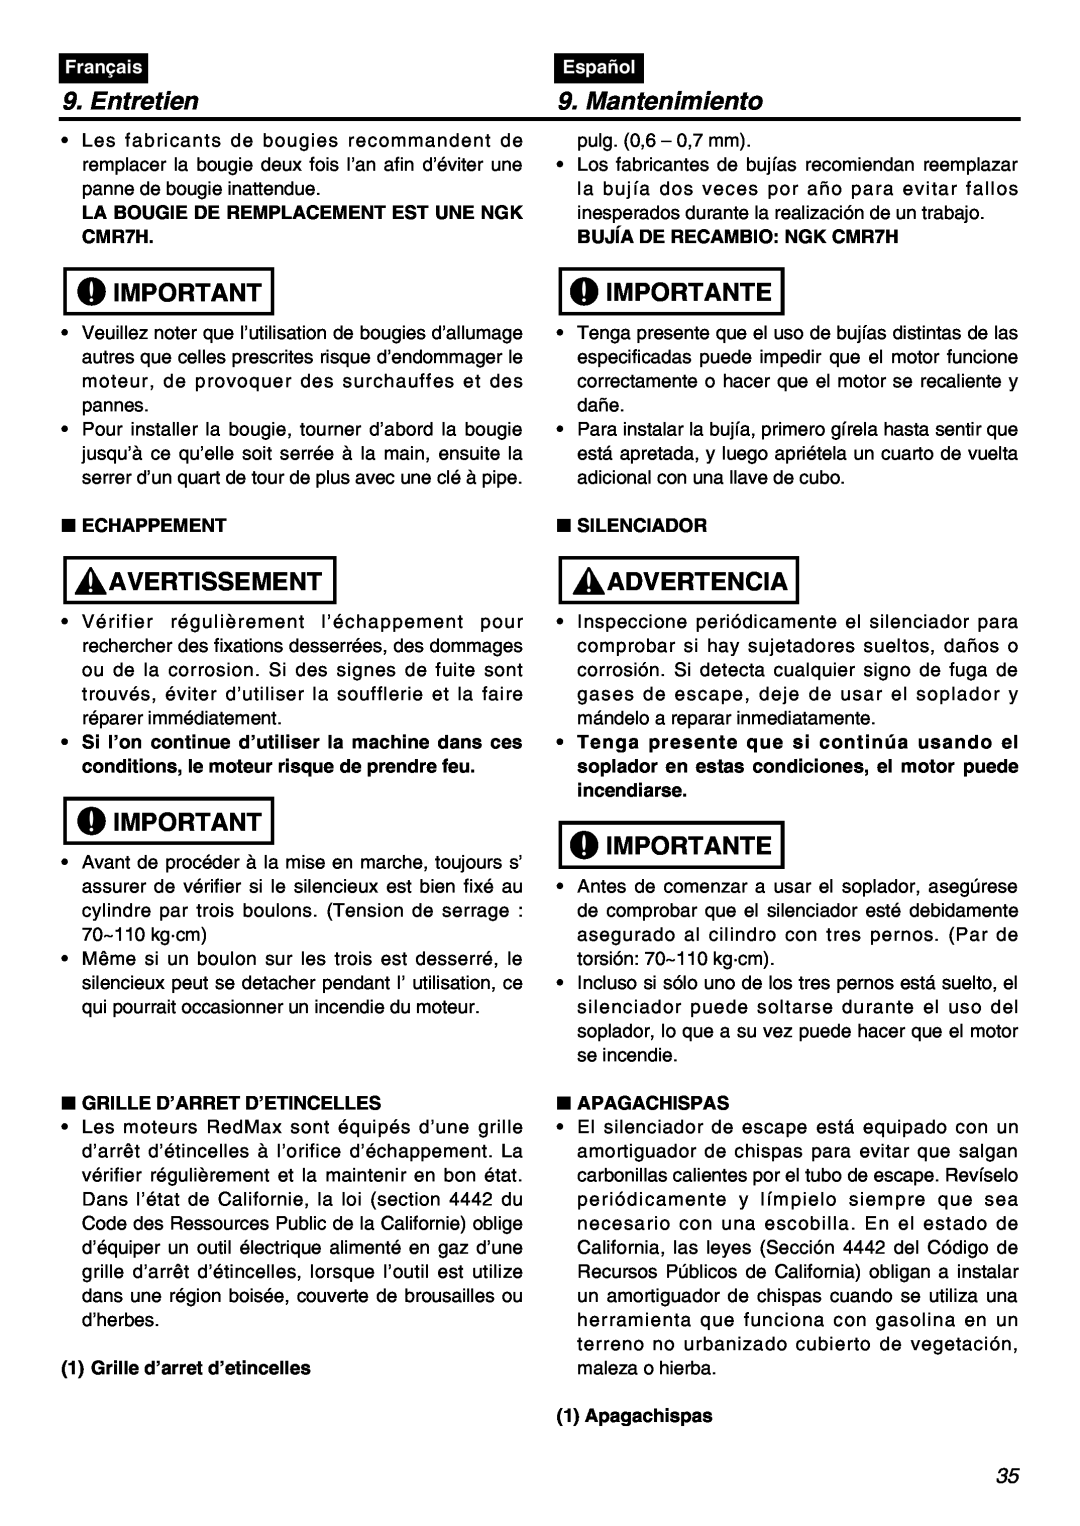 RedMax HBZ2601 manual Entretien, Mantenimiento, Avertissement, Importante, Advertencia, Français, Español, Echappement 